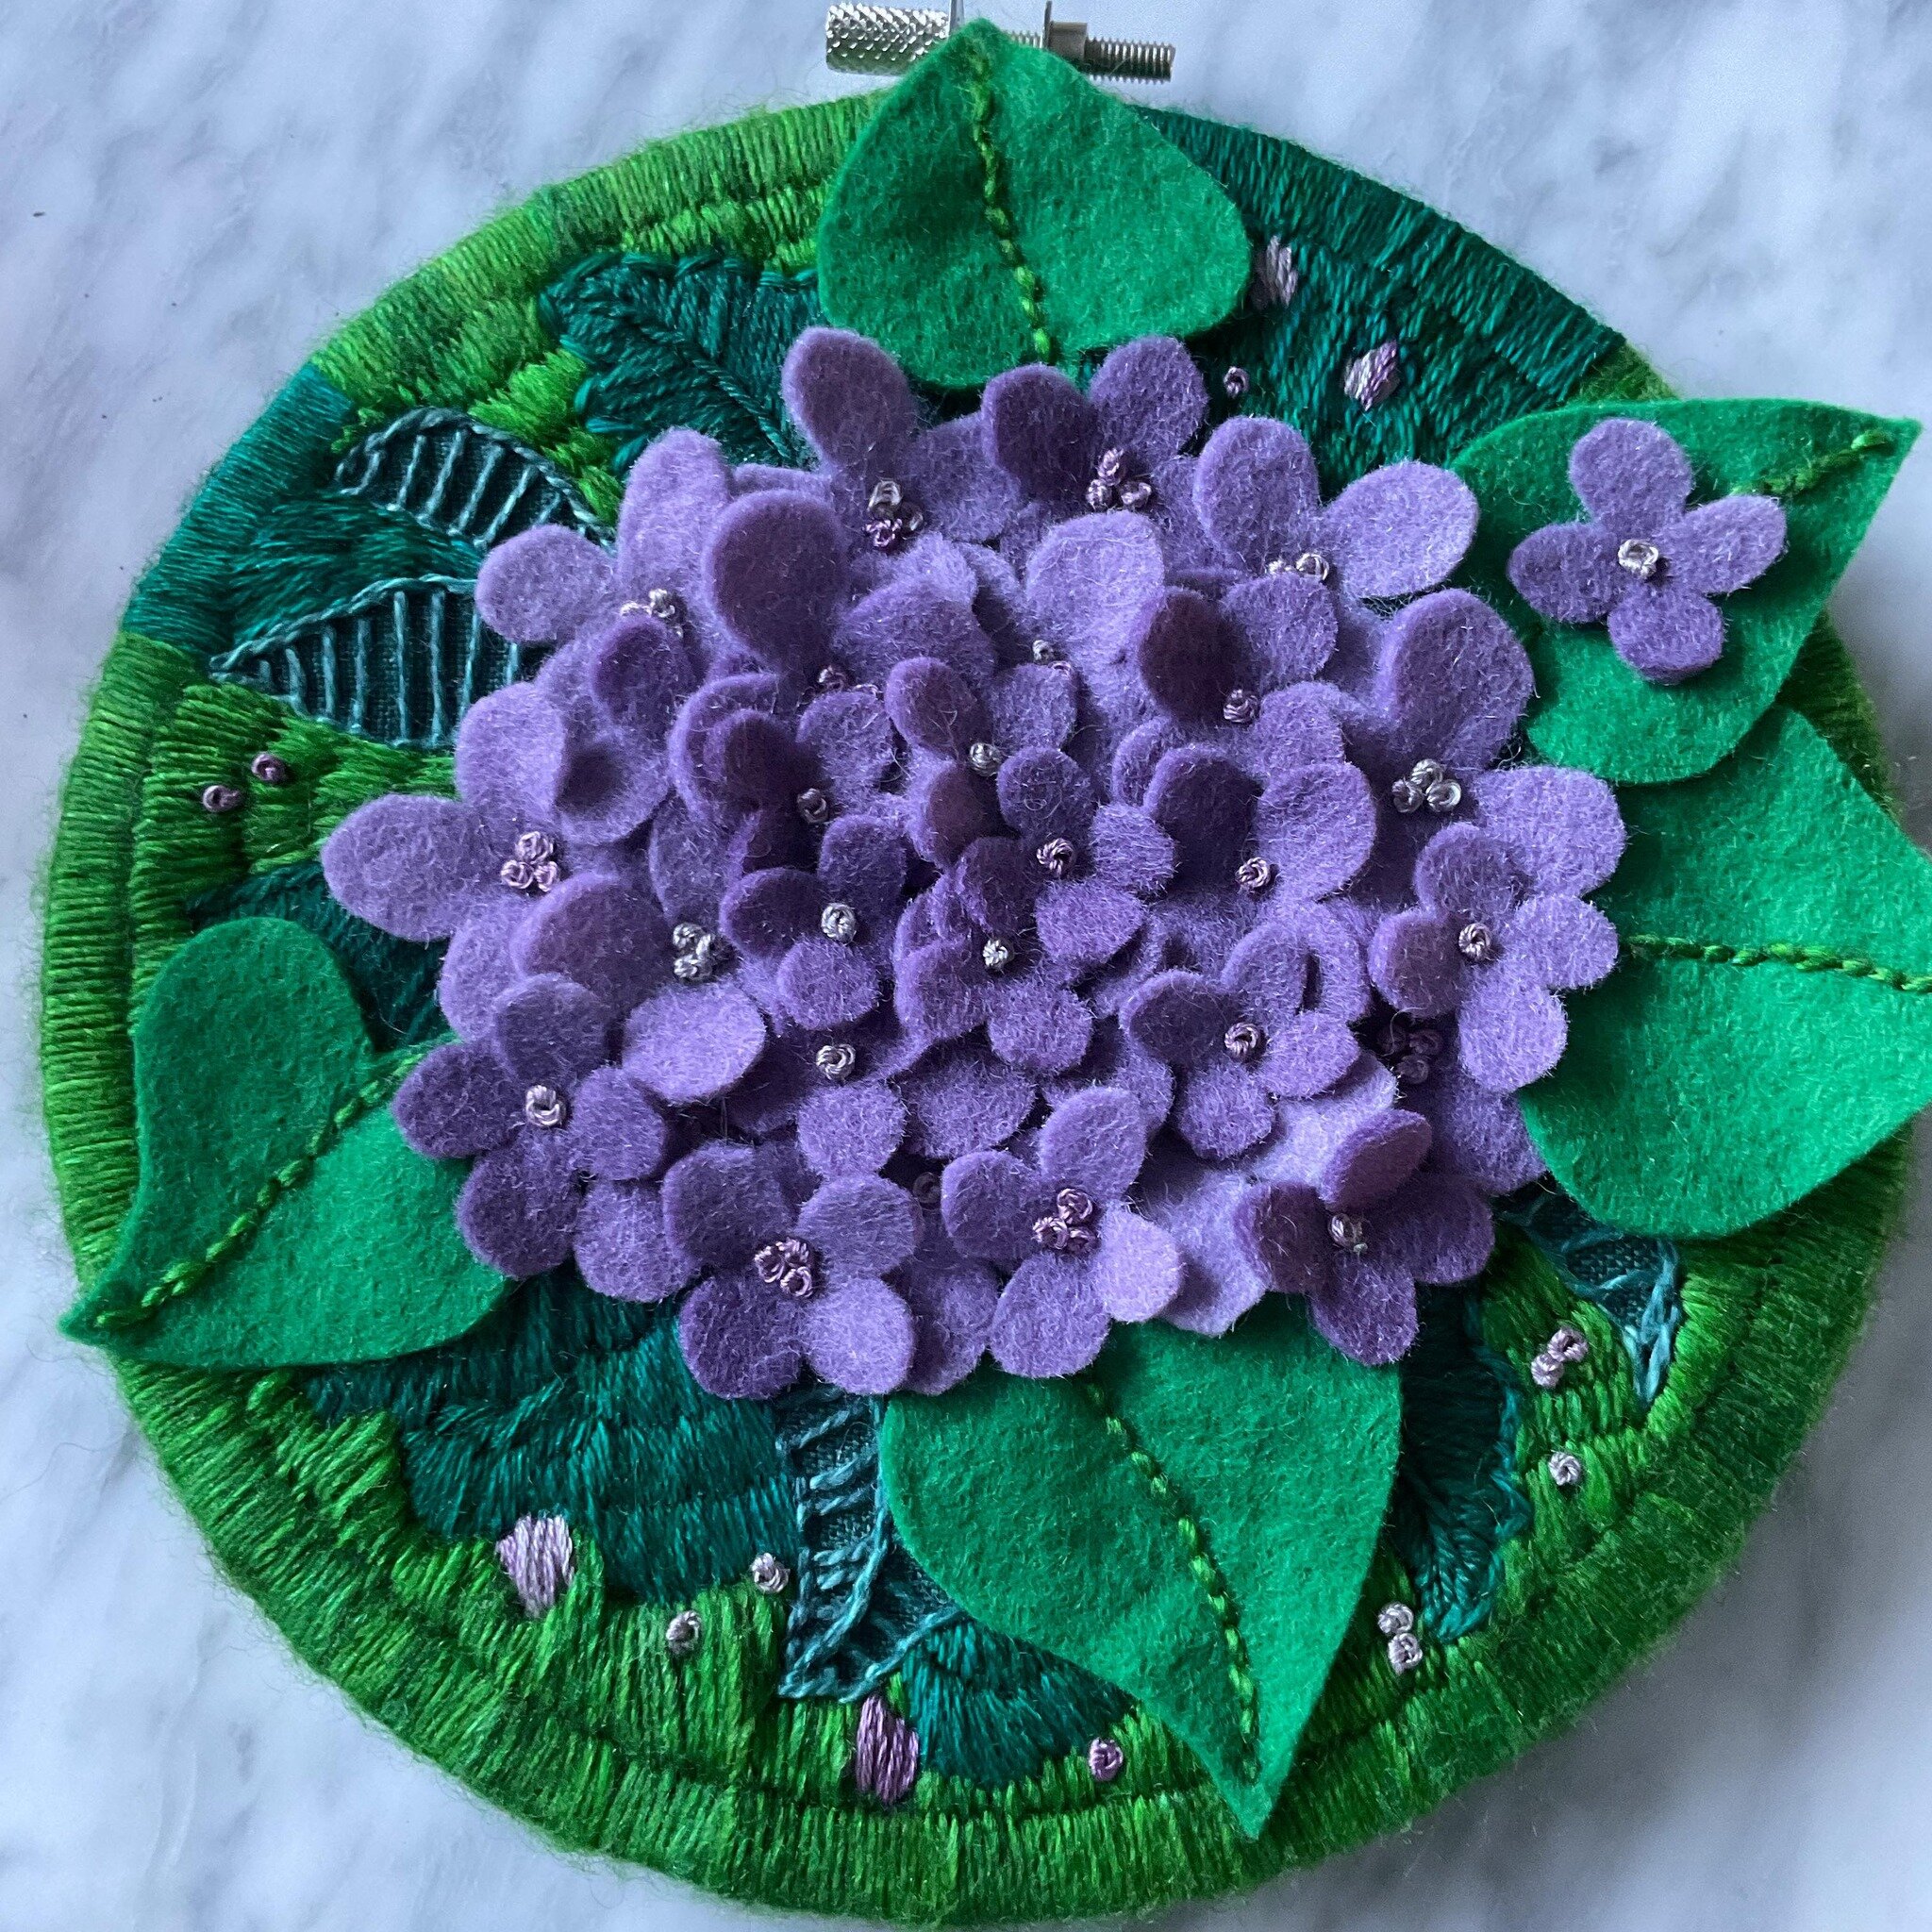 Easter flowers. #felt #feltcraft #embroidery #feltflowers #hoopart #purpleflowers